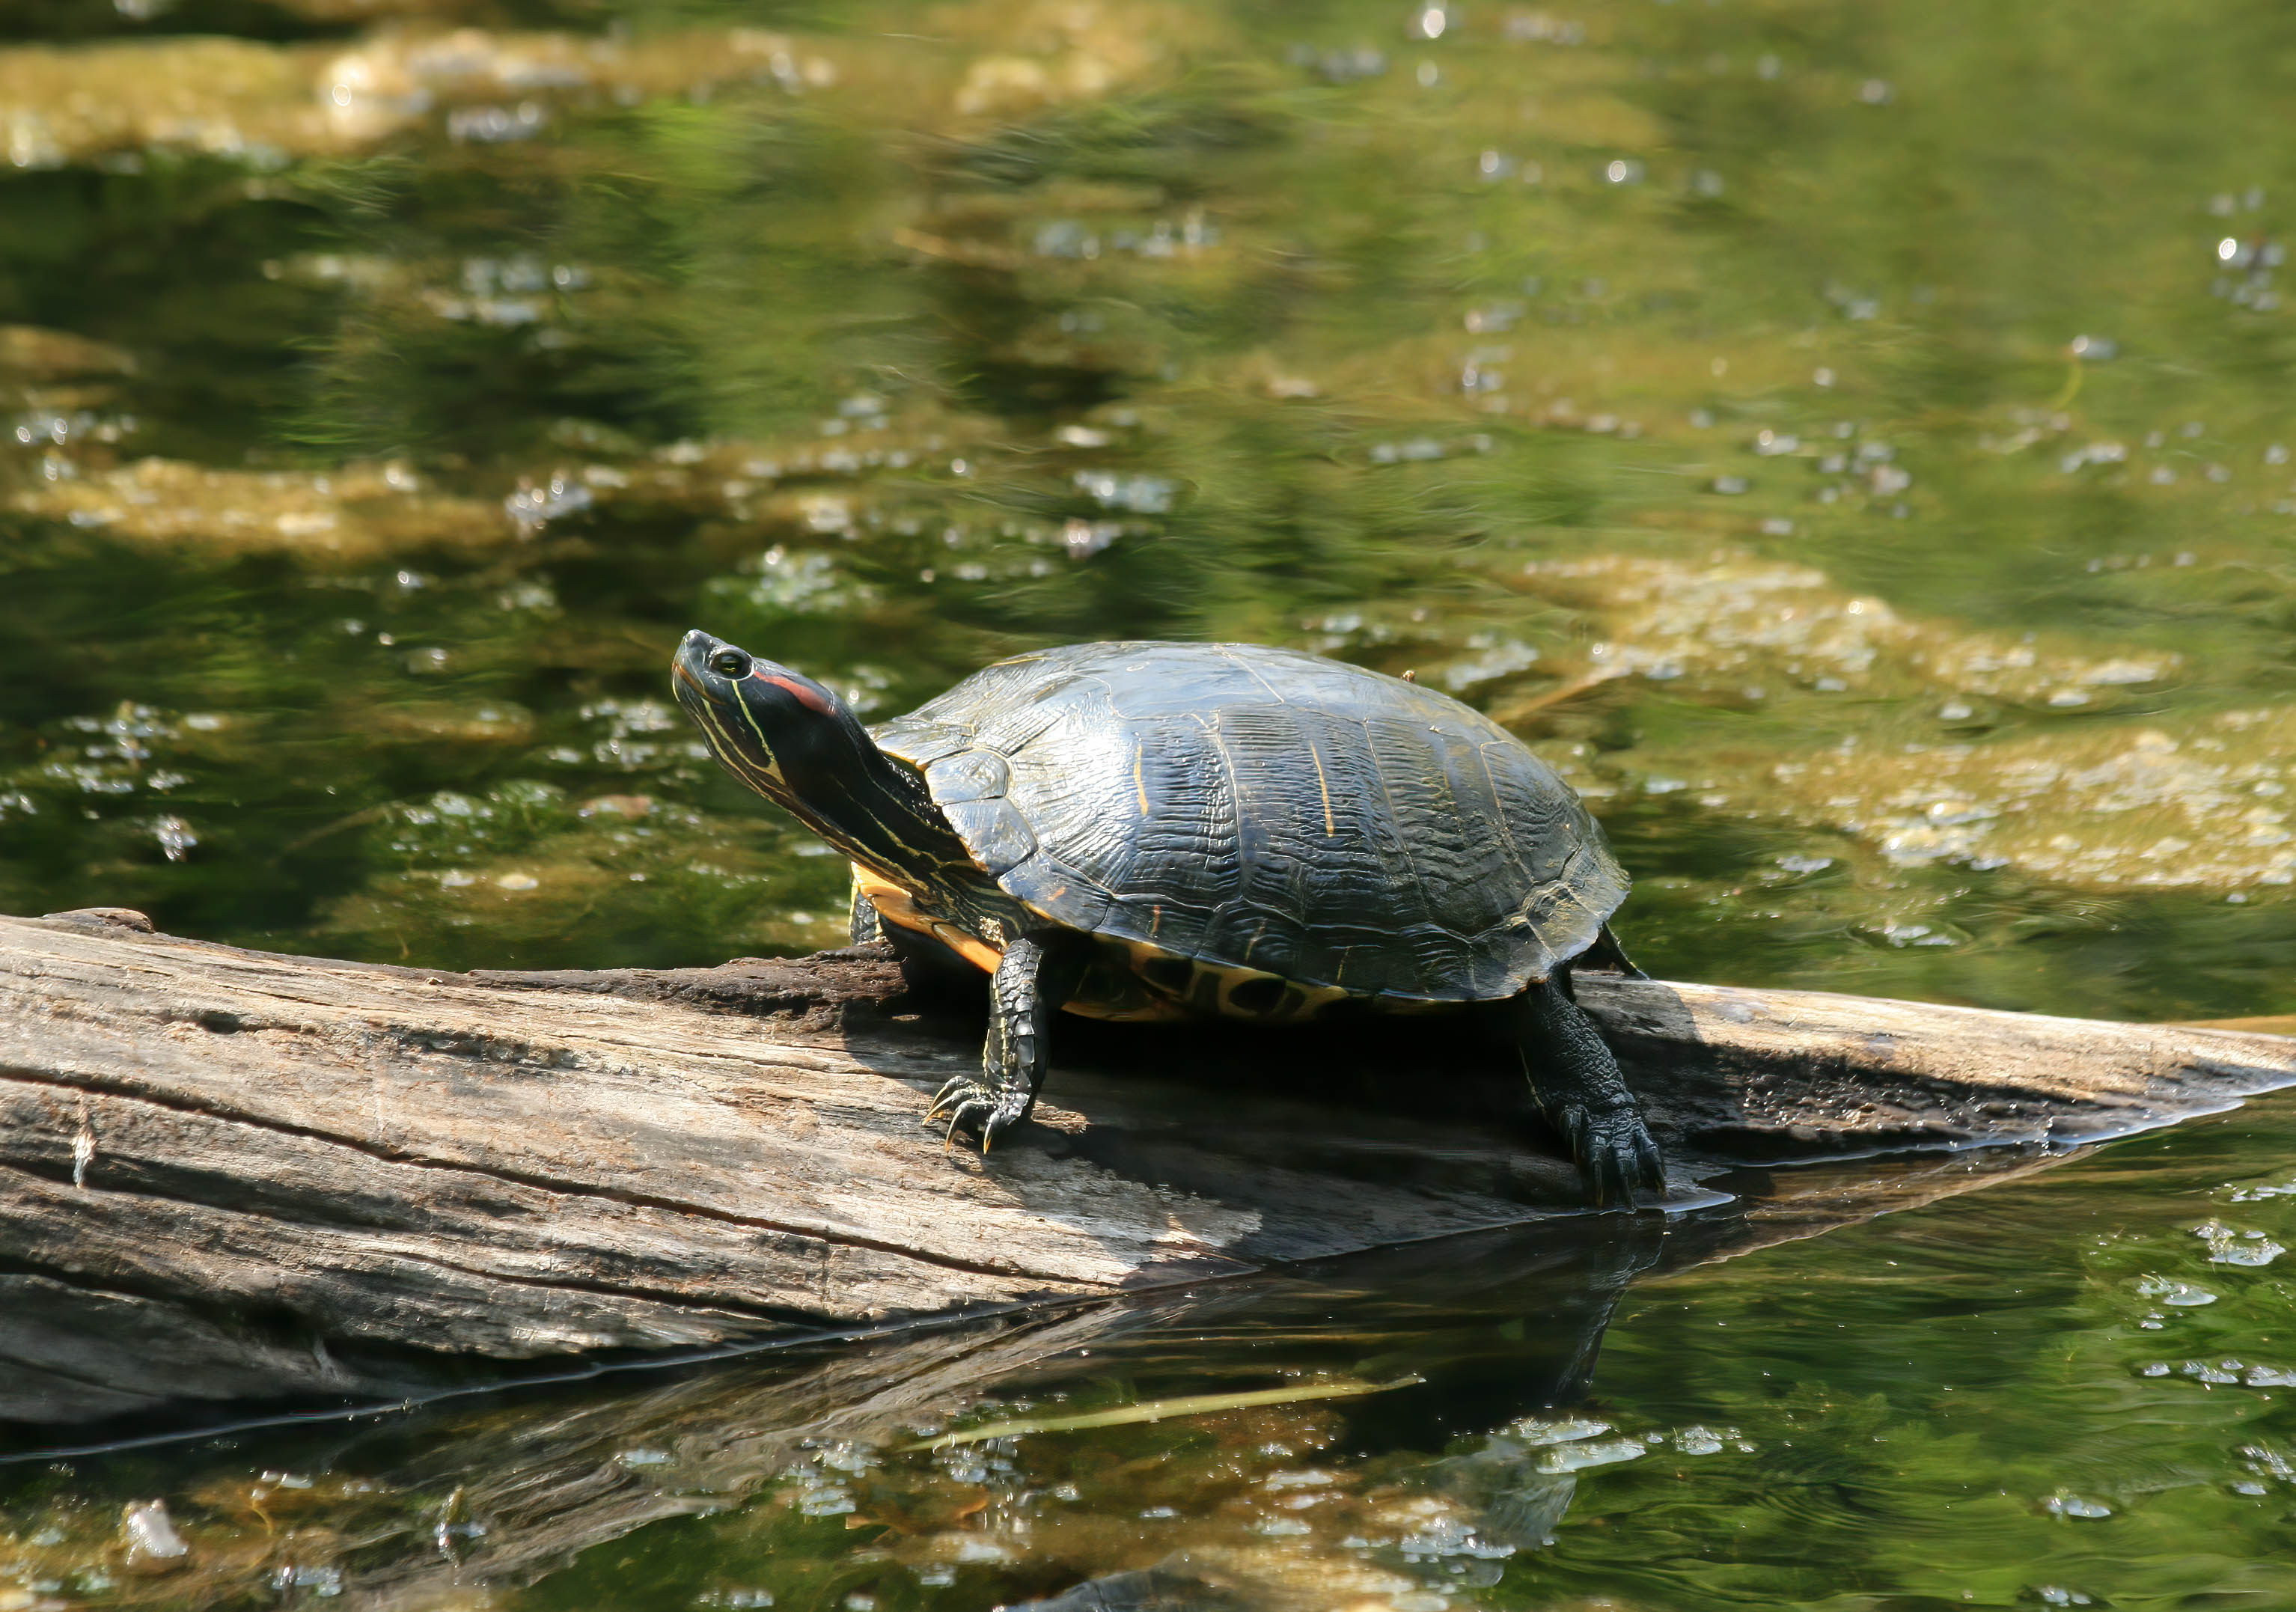 A turtle on a log